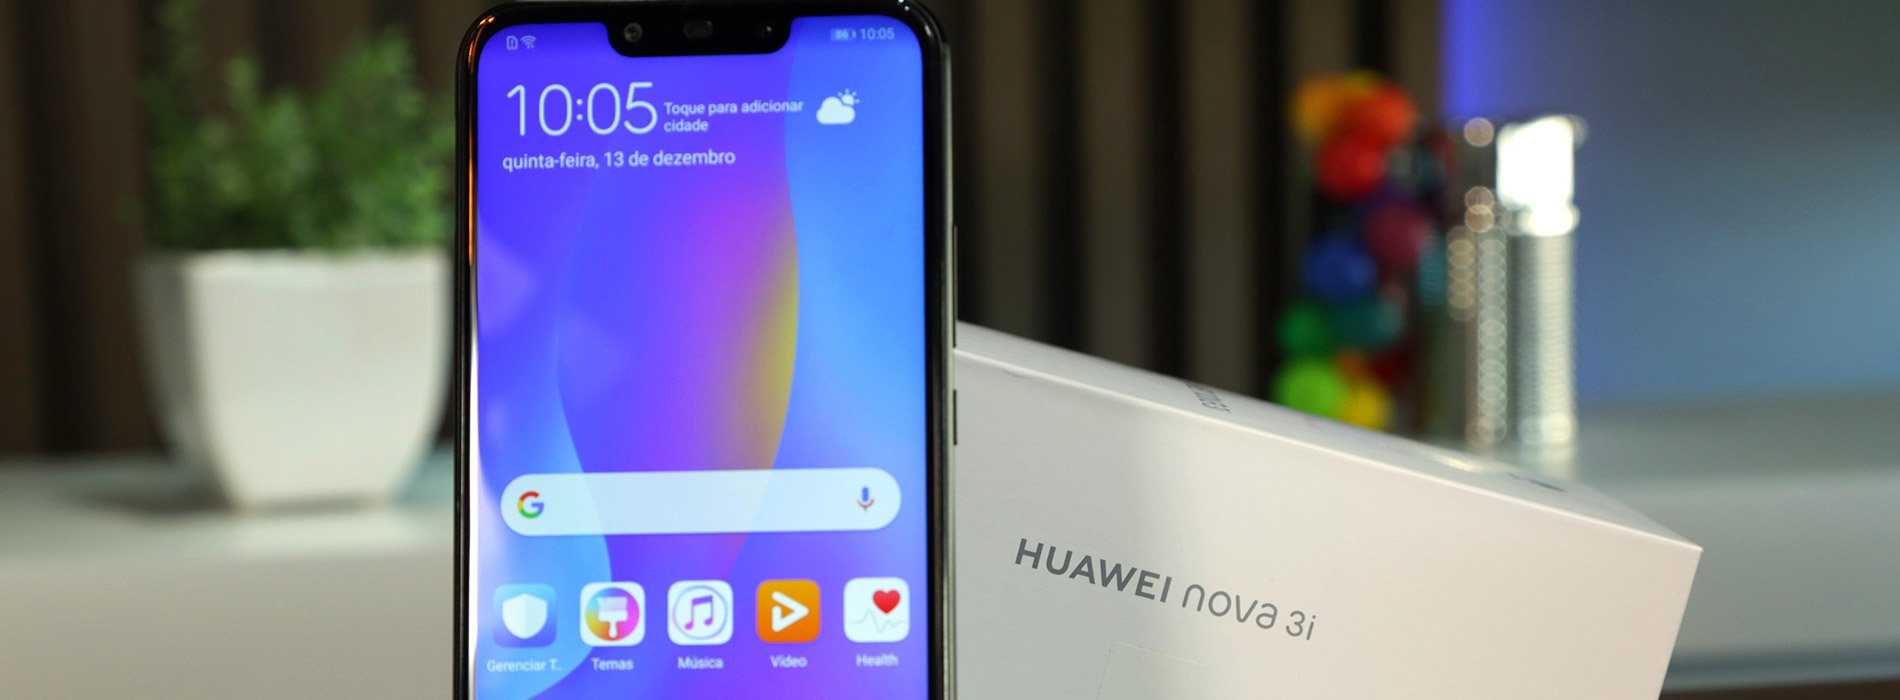 Análise: Huawei nova 3i - um ótimo aparelho com muitos recursos